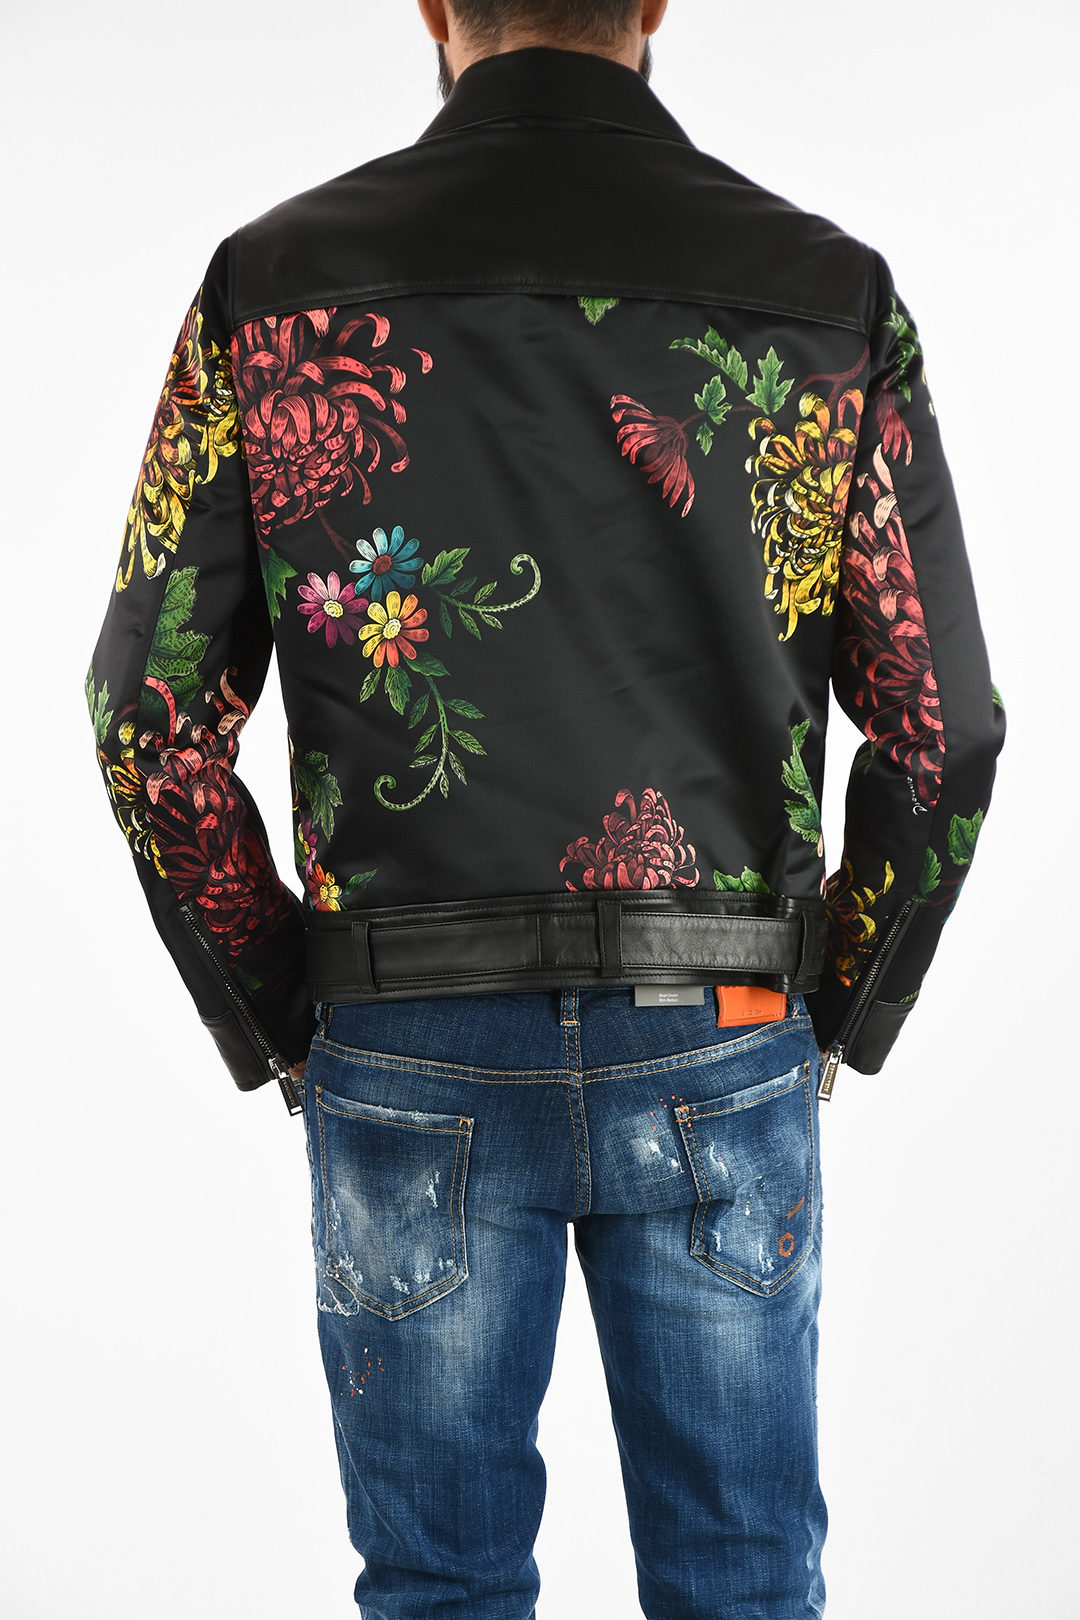 Dsquared2 Floral-Print Biker Jacket with Leather Details men - Glamood ...